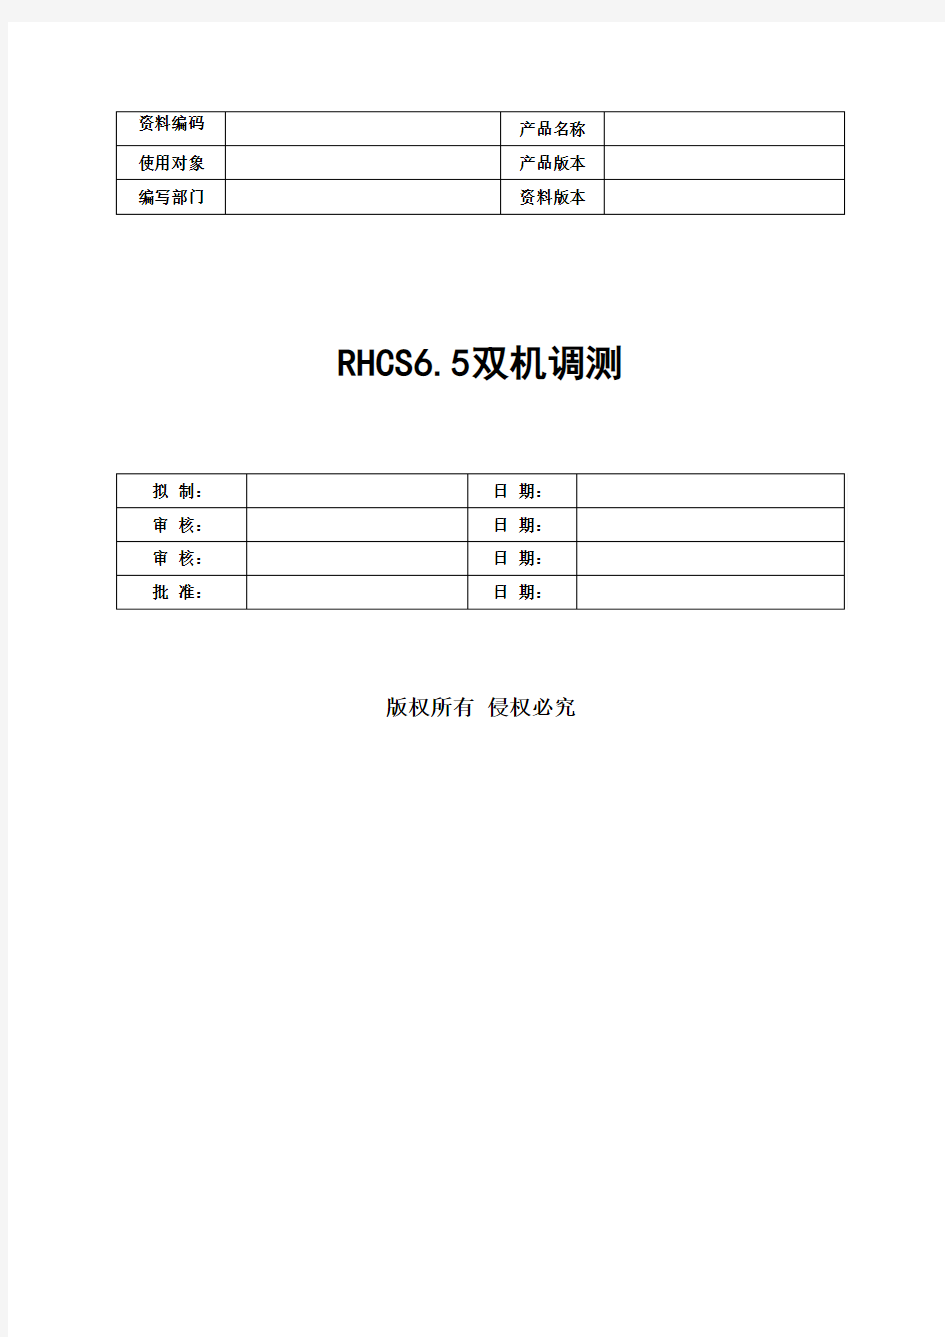 XX银行RHCS6.5双机调测